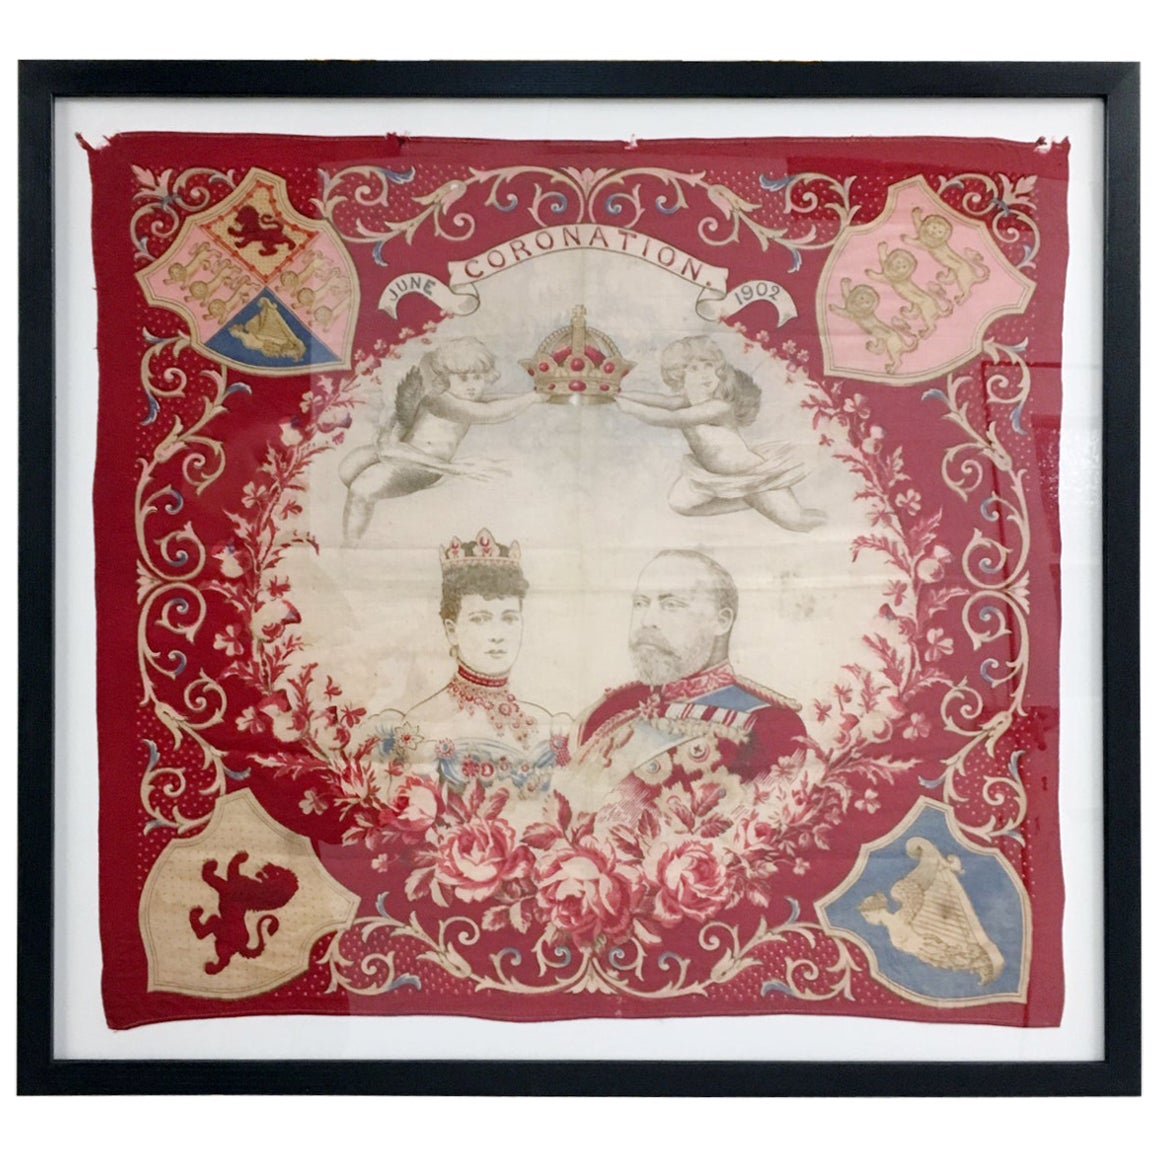 Gerahmte rote Flagge von König Edward VII. zur Krönung, Juni 1902